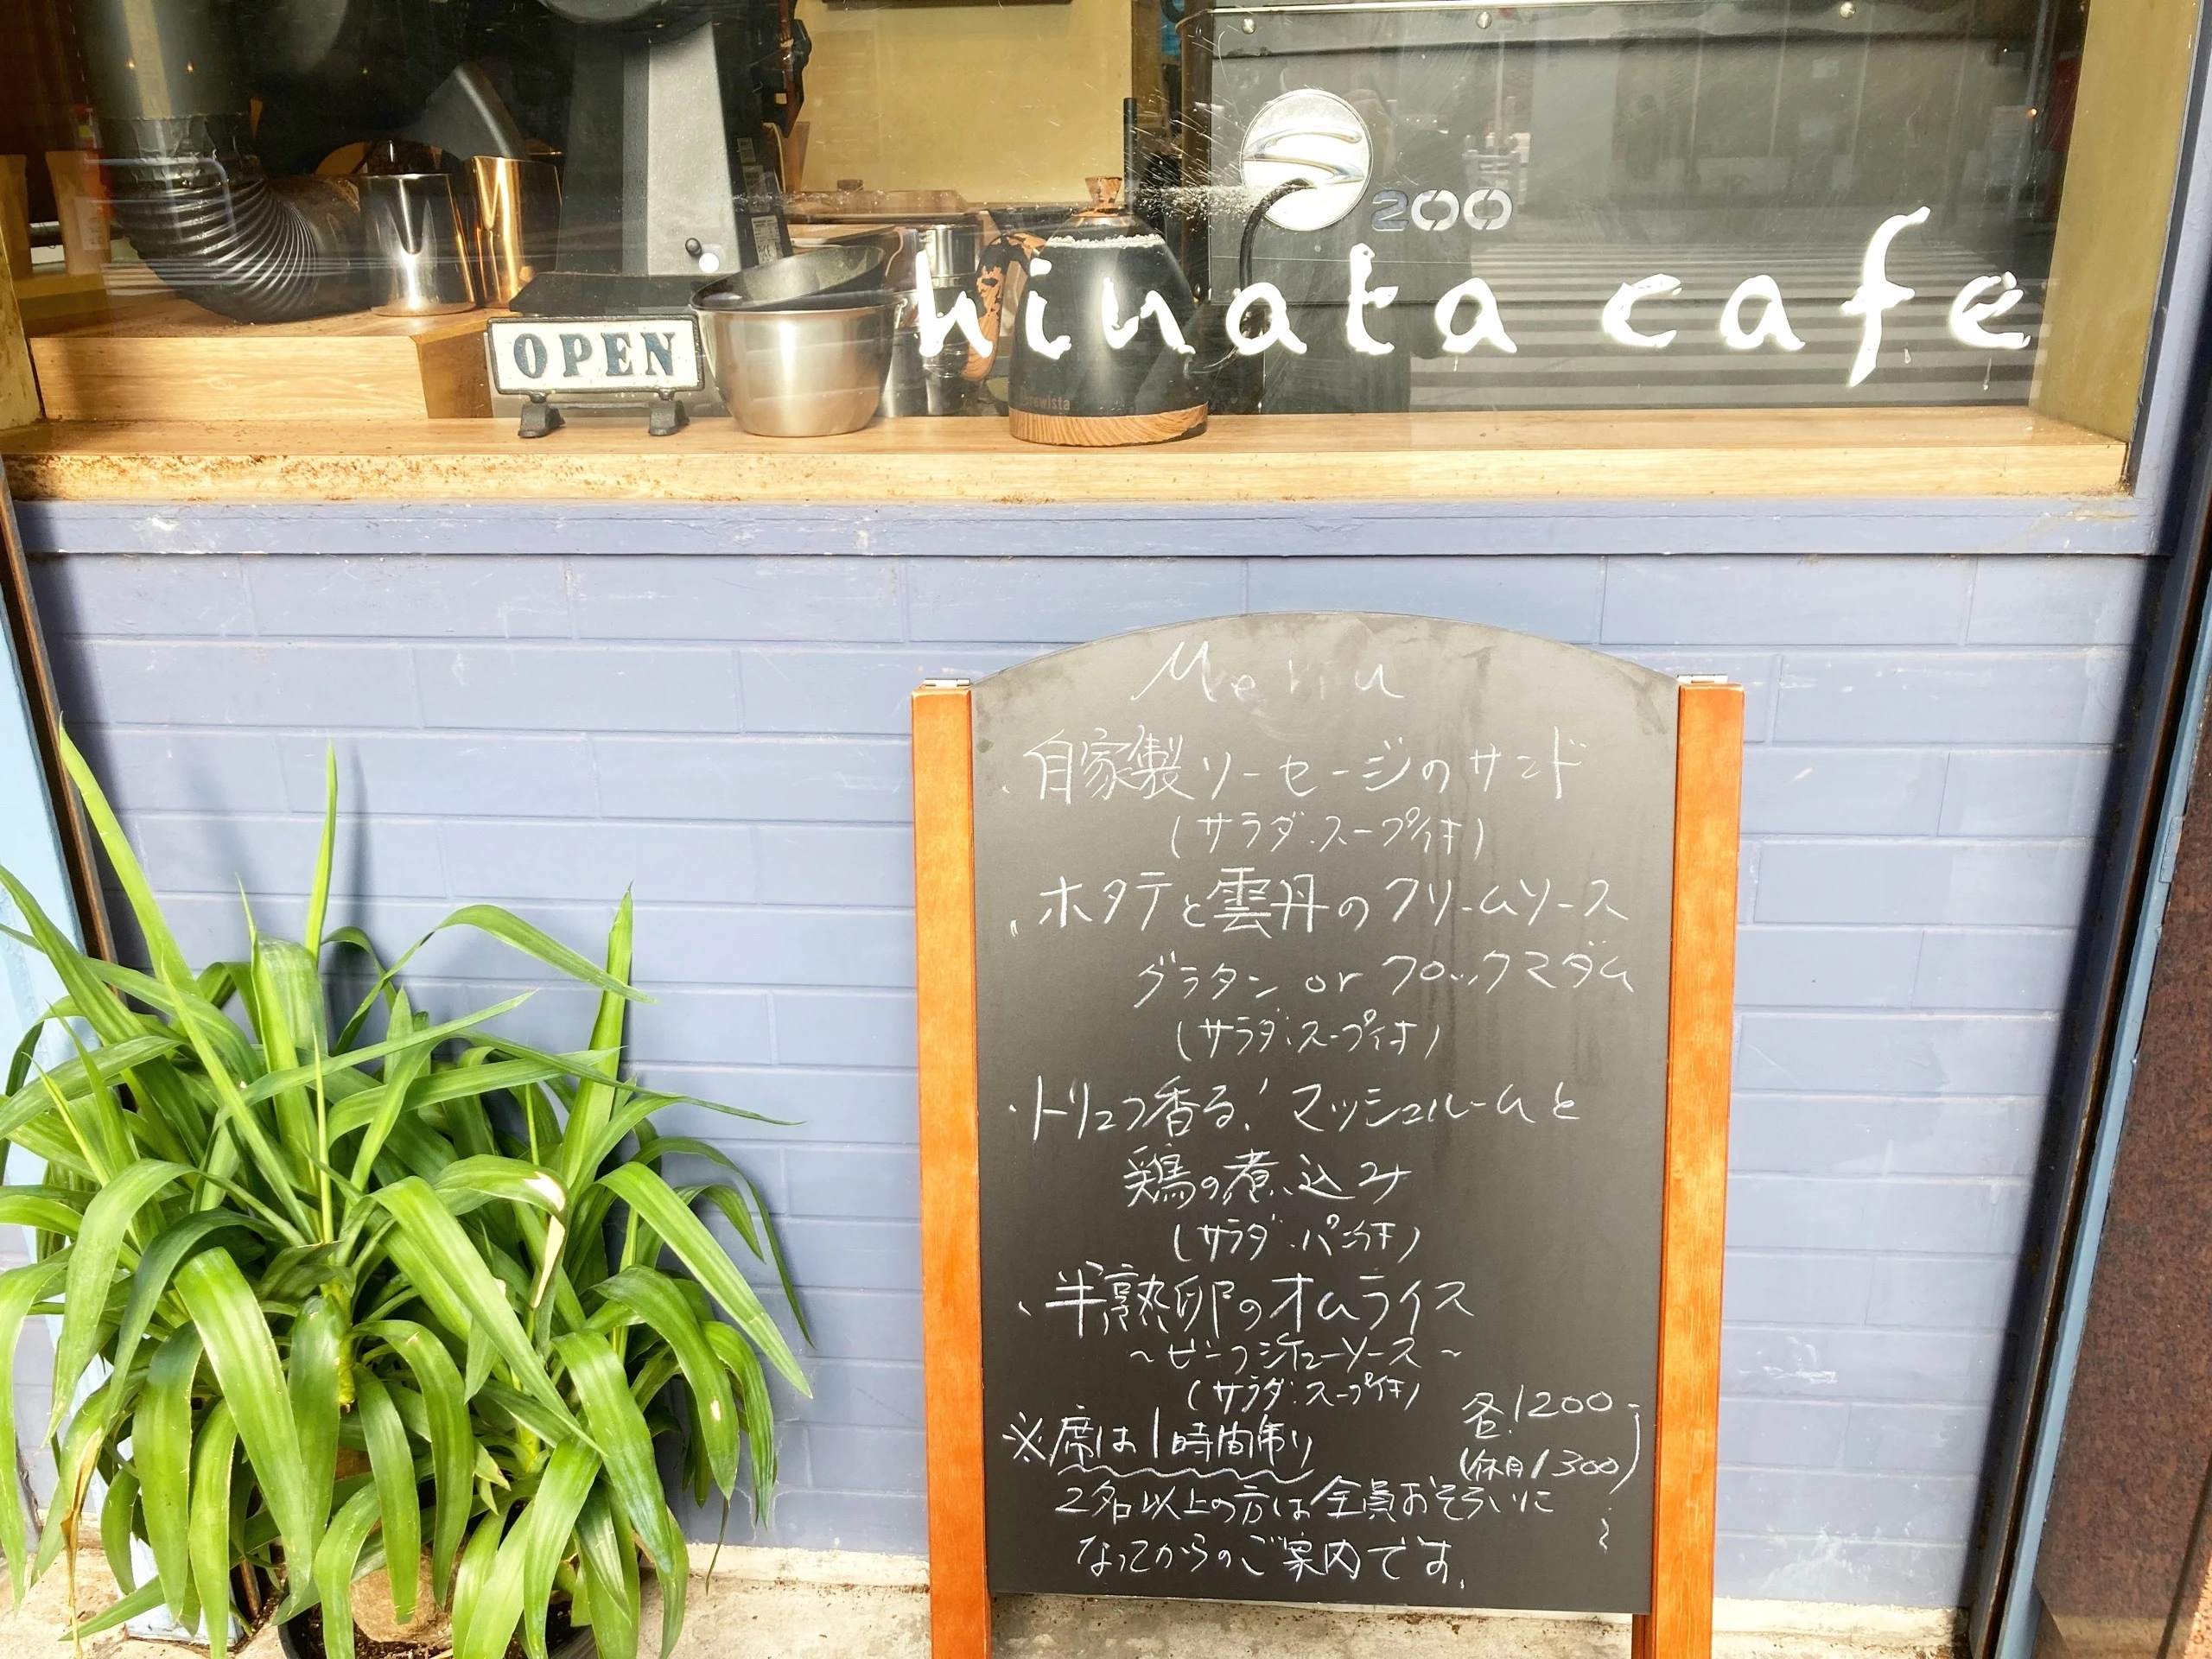 hinata cafe 店外にあるメニューボード。